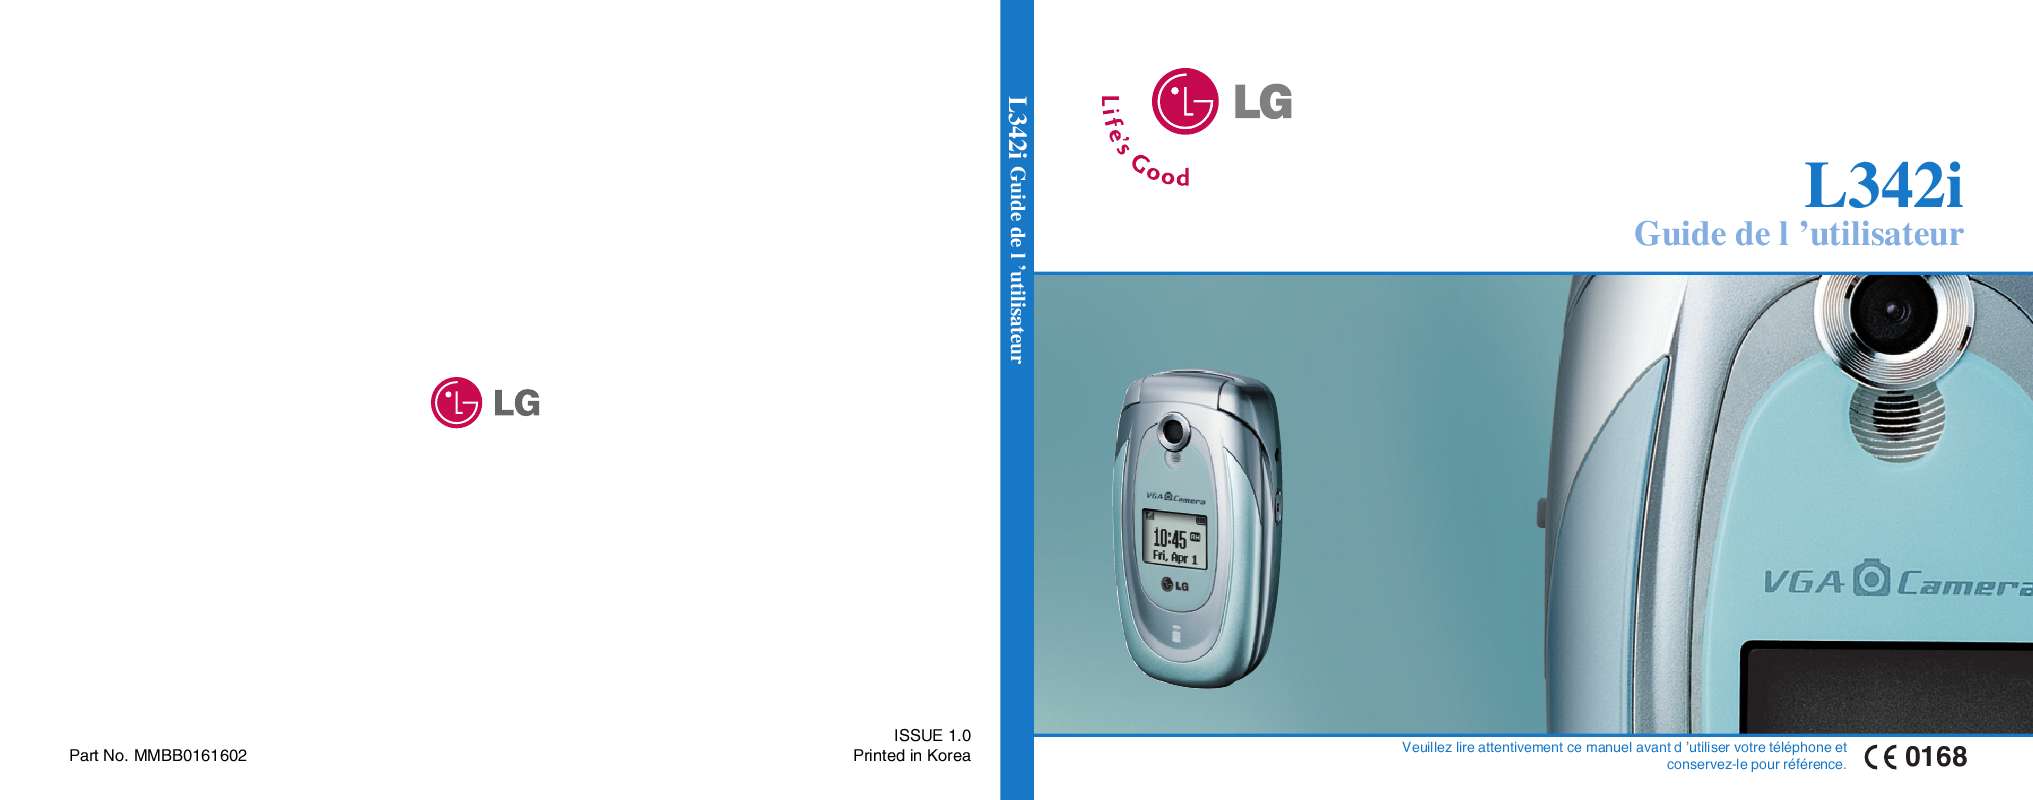 Guide utilisation LG L342I BOUYGUES  de la marque LG